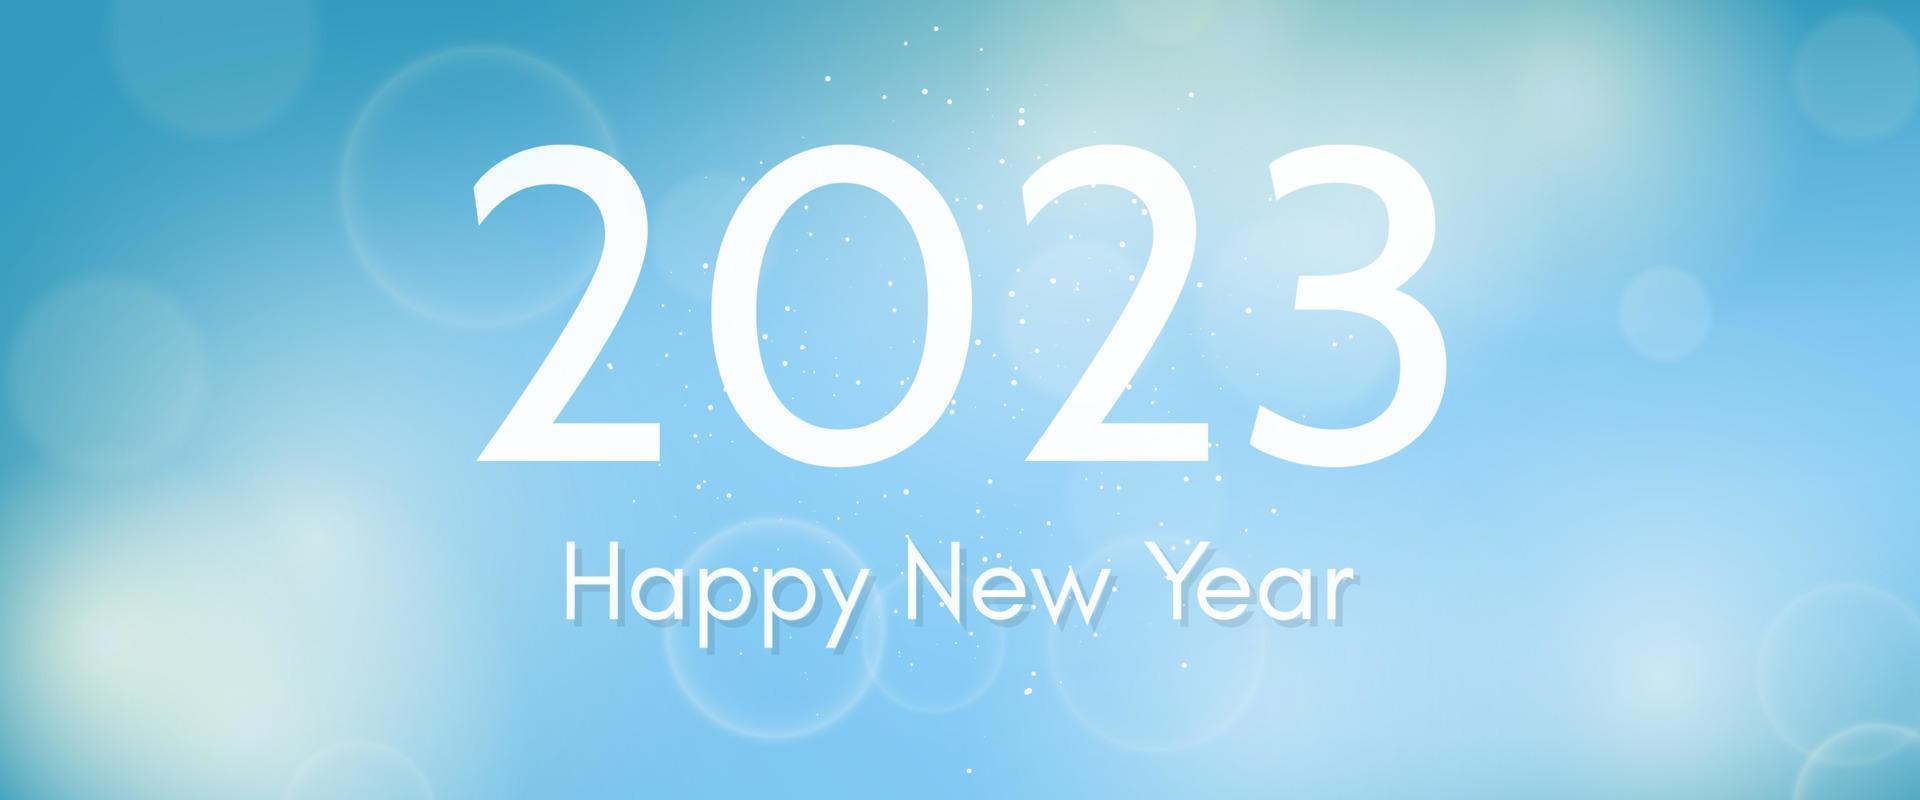 Frohes neues Jahr 2023 Inschrift auf verschwommenem Hintergrund vektor